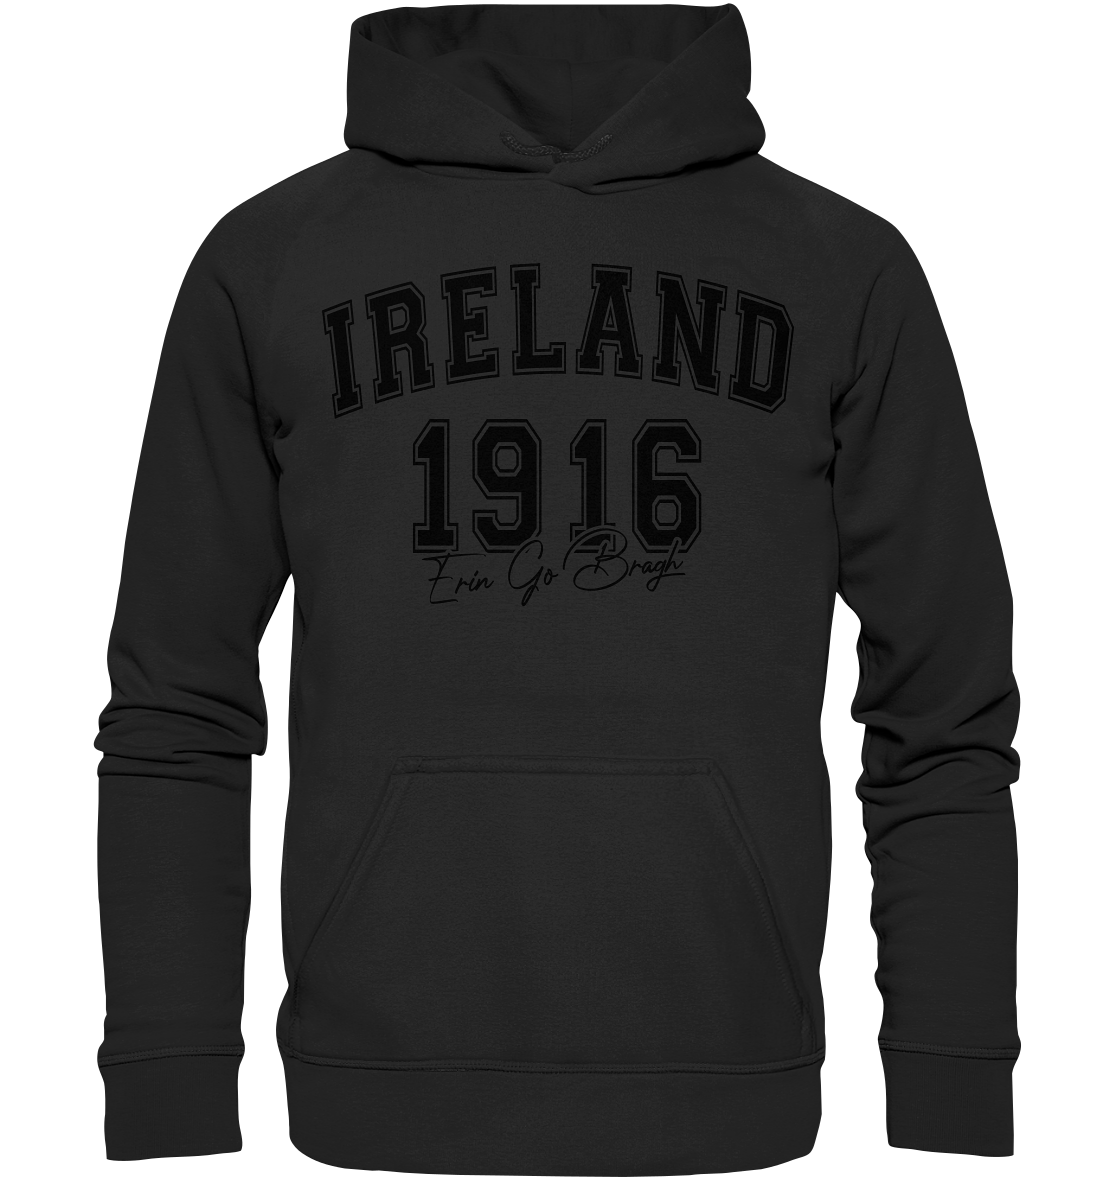 Ireland "1916 / Erin Go Bragh" - Basic Unisex Hoodie